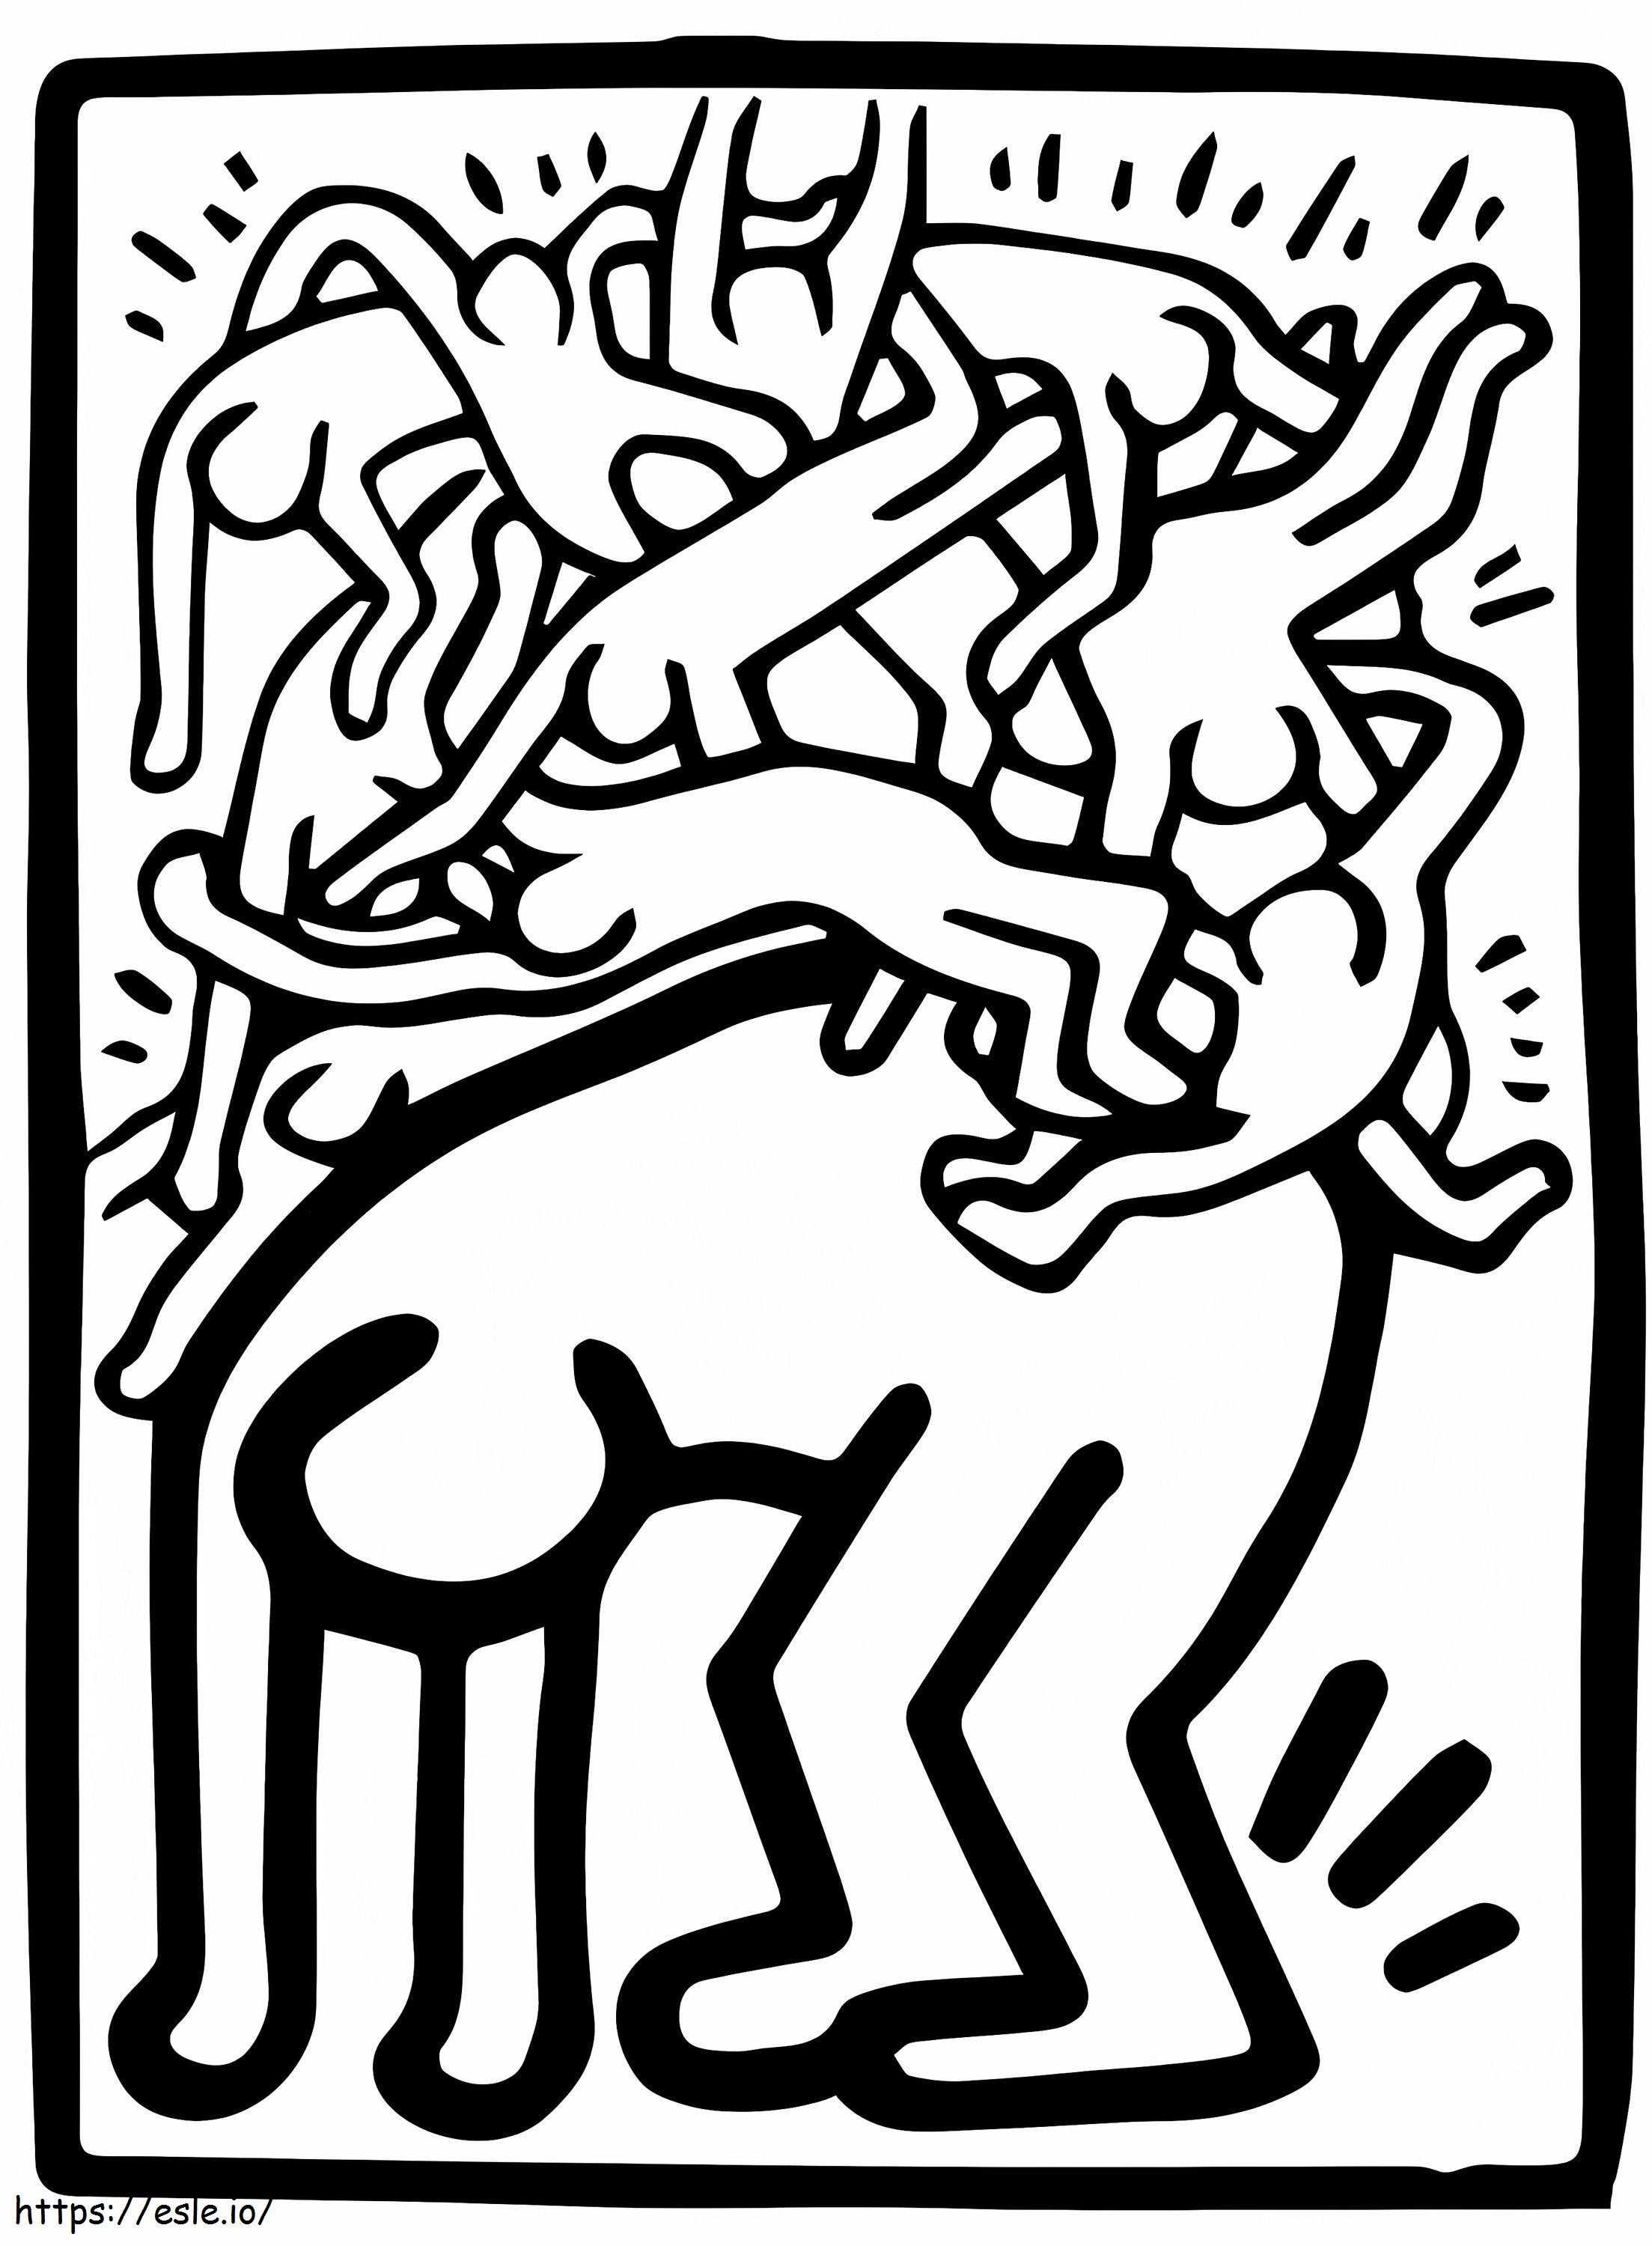  Pomoce bojowe na całym świecie autorstwa Keitha Haringa kolorowanka